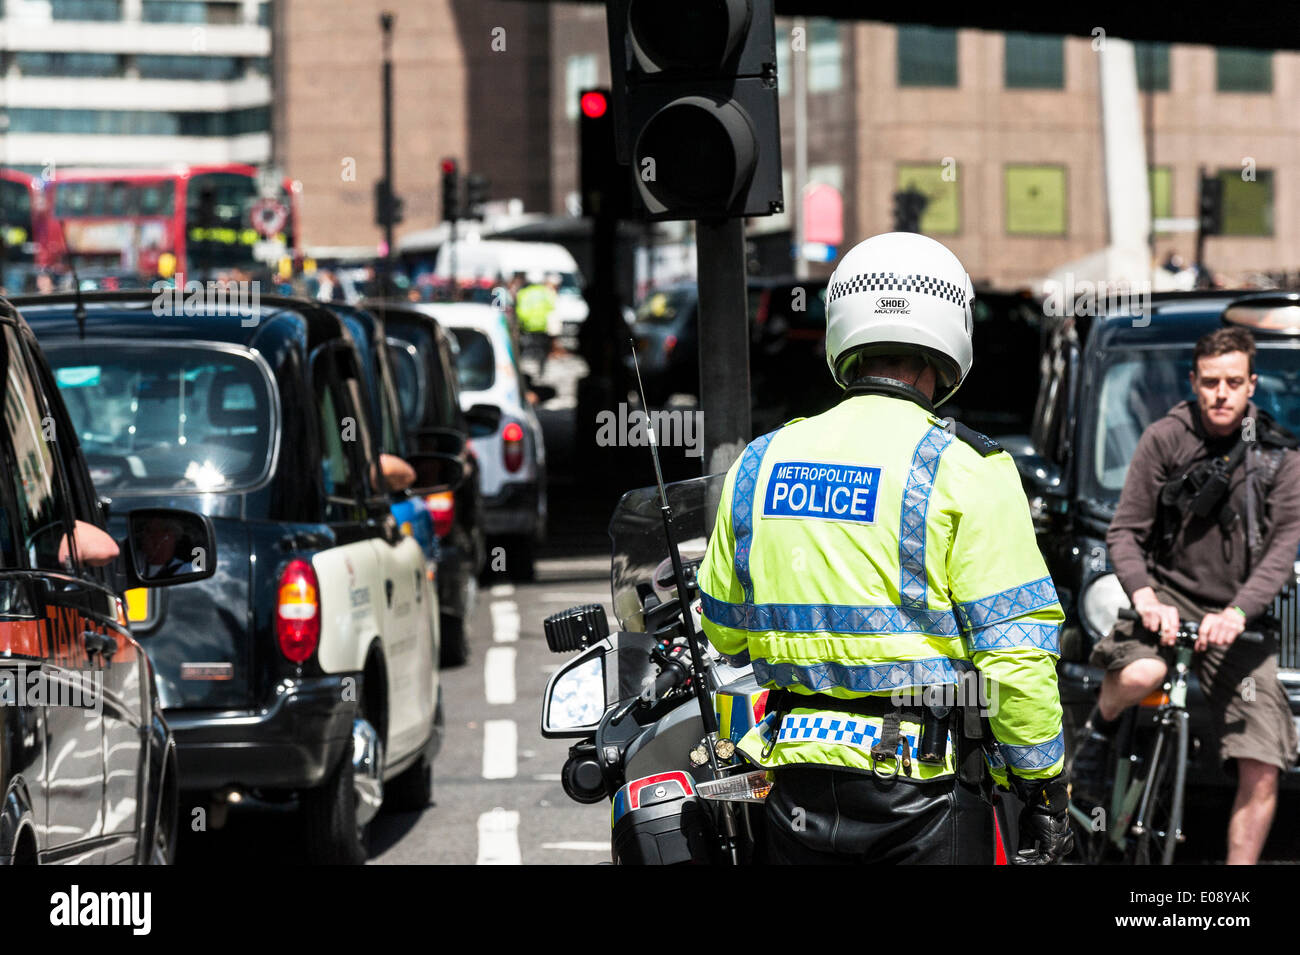 Londres, Royaume-Uni. 6 mai 2014, un agent de moto métropolitaine, impuissant, regarde le contre-taxis dans les rues de Southwark pour protester contre le refus de placer un taxi noir de taxis devant l'entrée du fragment. Photographe : Gordon 1928/Alamy Live News Banque D'Images